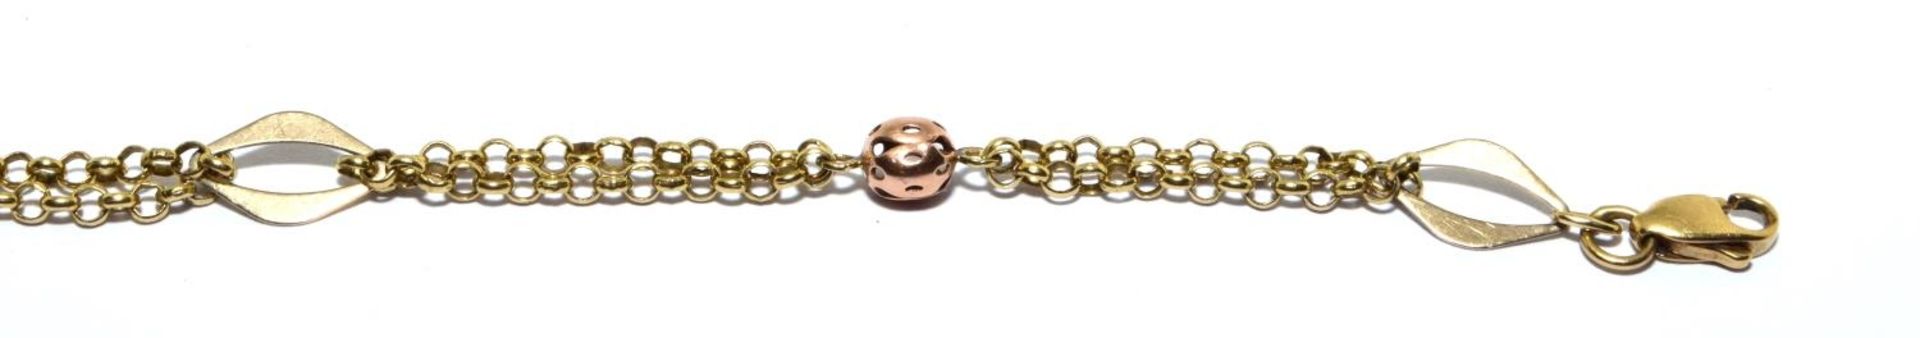 9ct gold ball design bracelet 3.6g 16cm long - Image 3 of 4